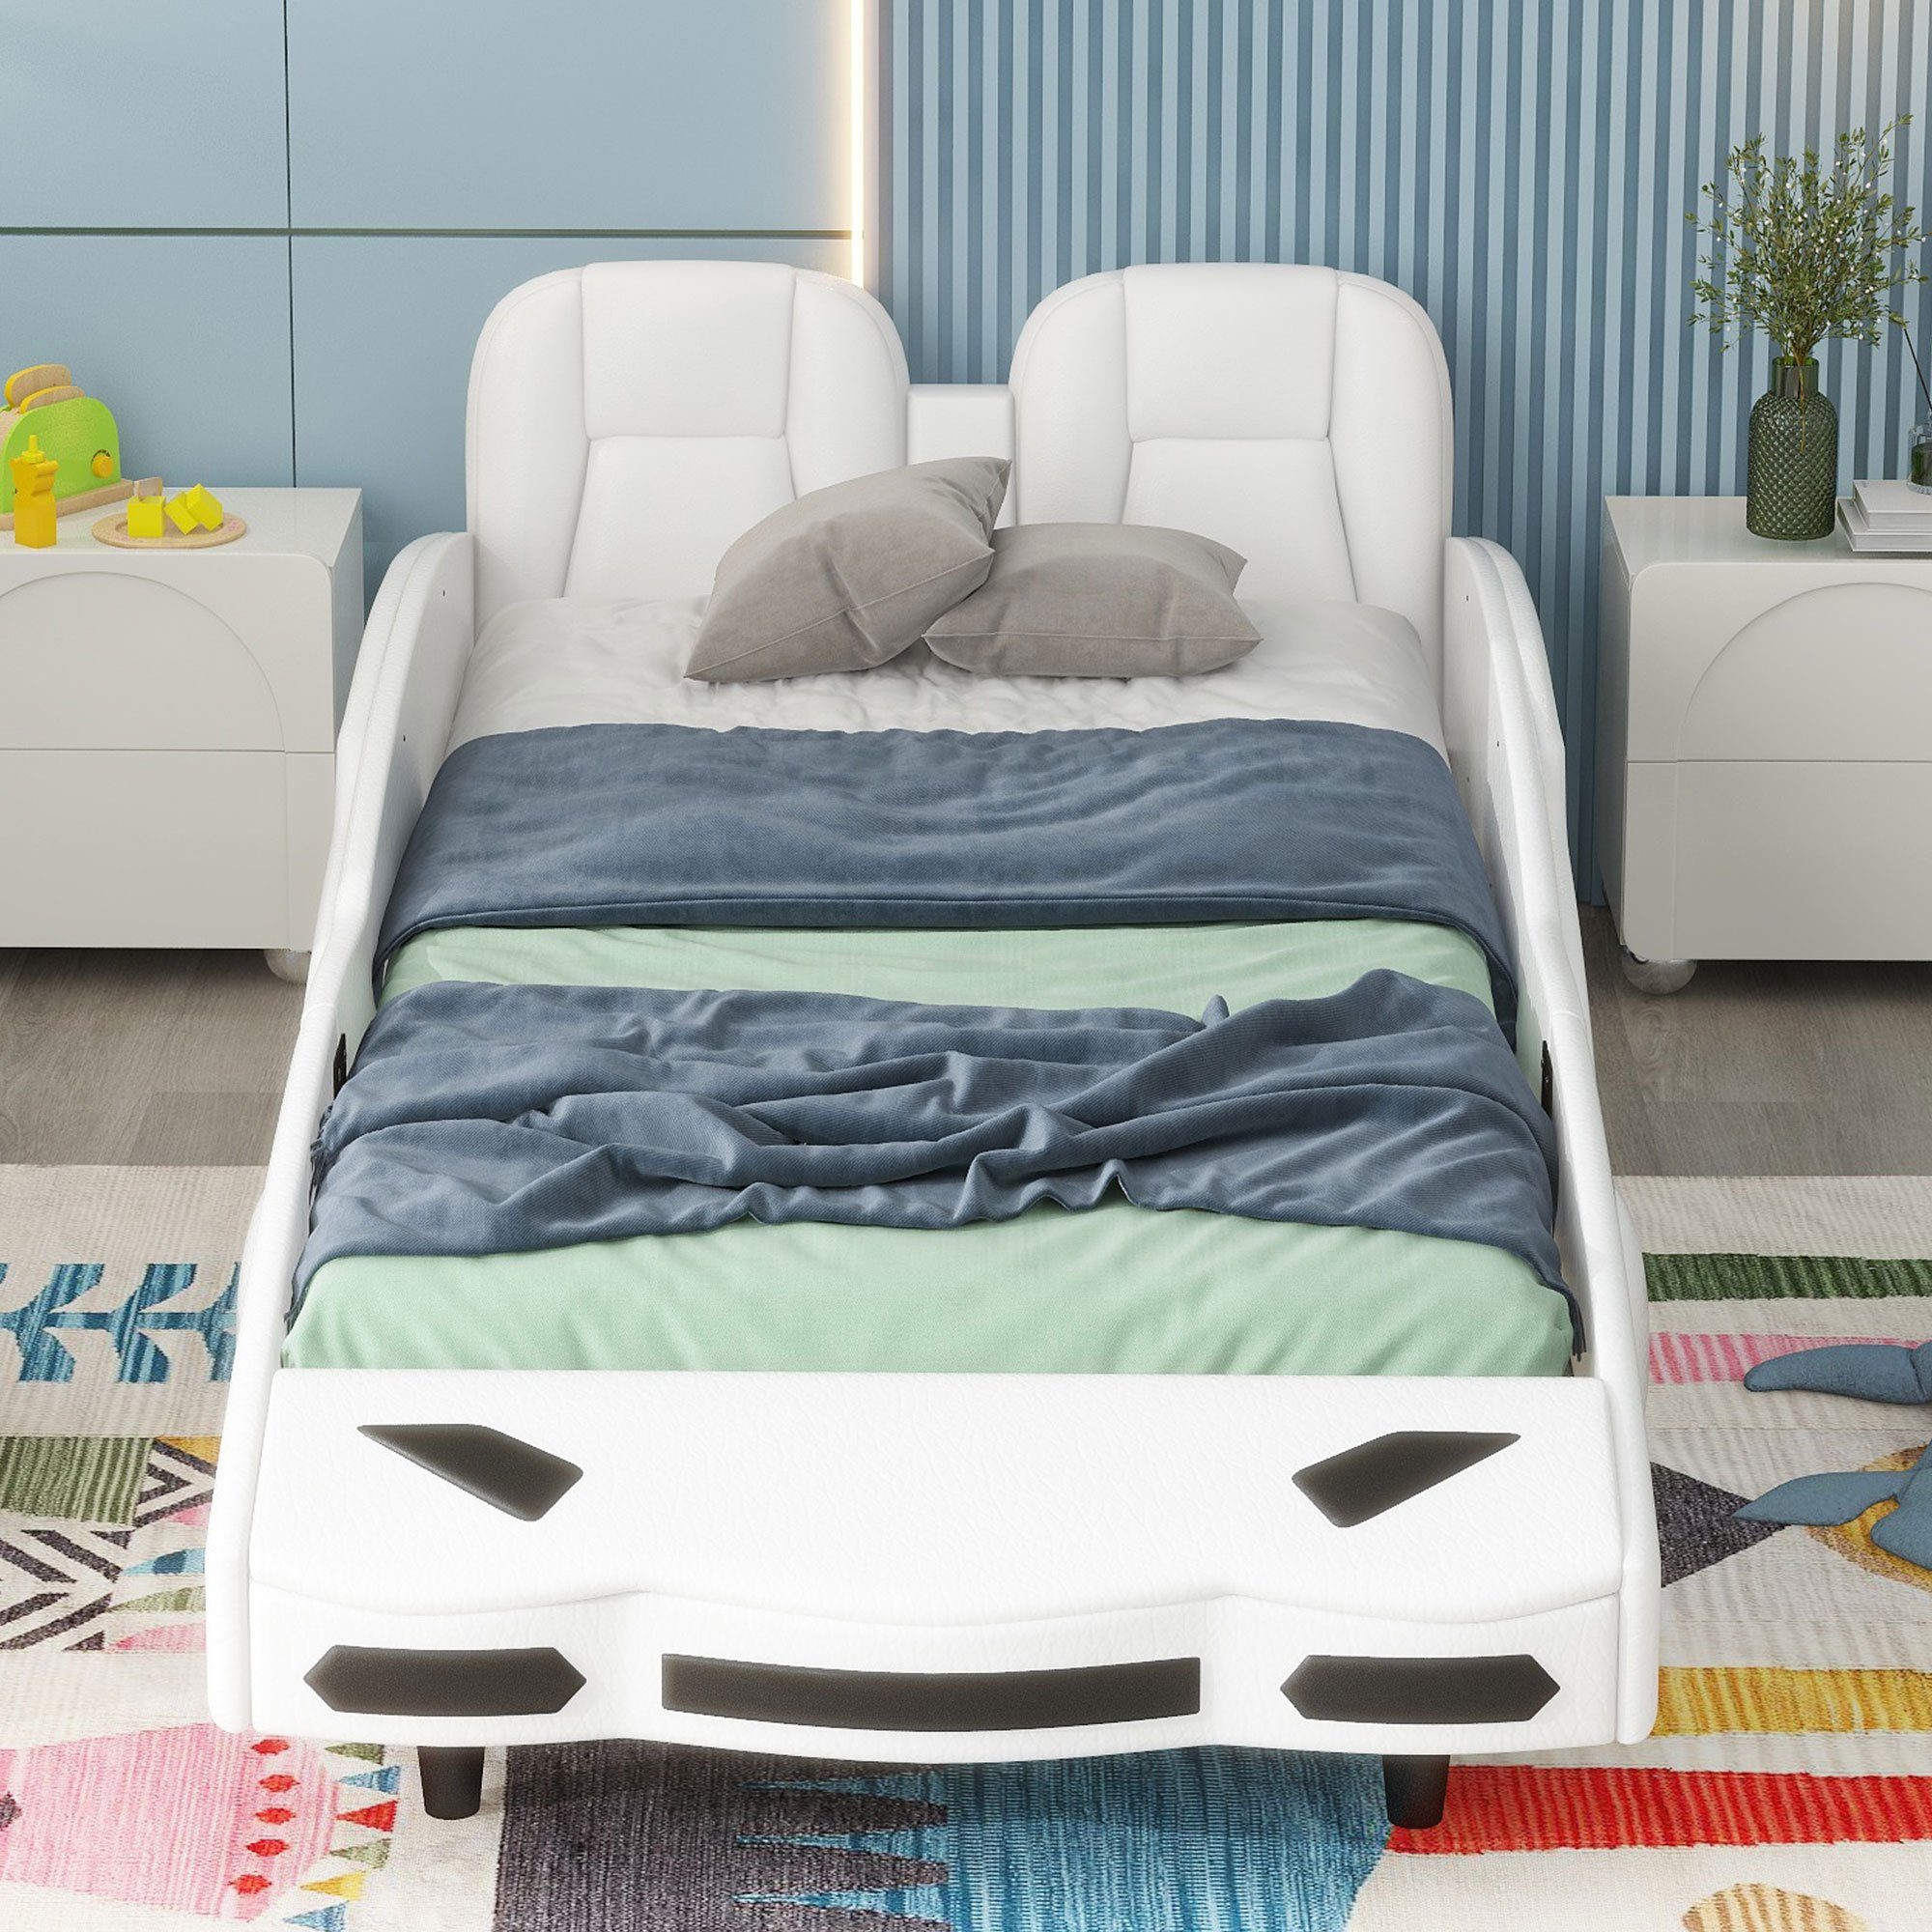 Ulife Autobett Kinderbett Kunstleder Spielbett Rausfallschutz, Flachbett Weiß 90×200cm, mit